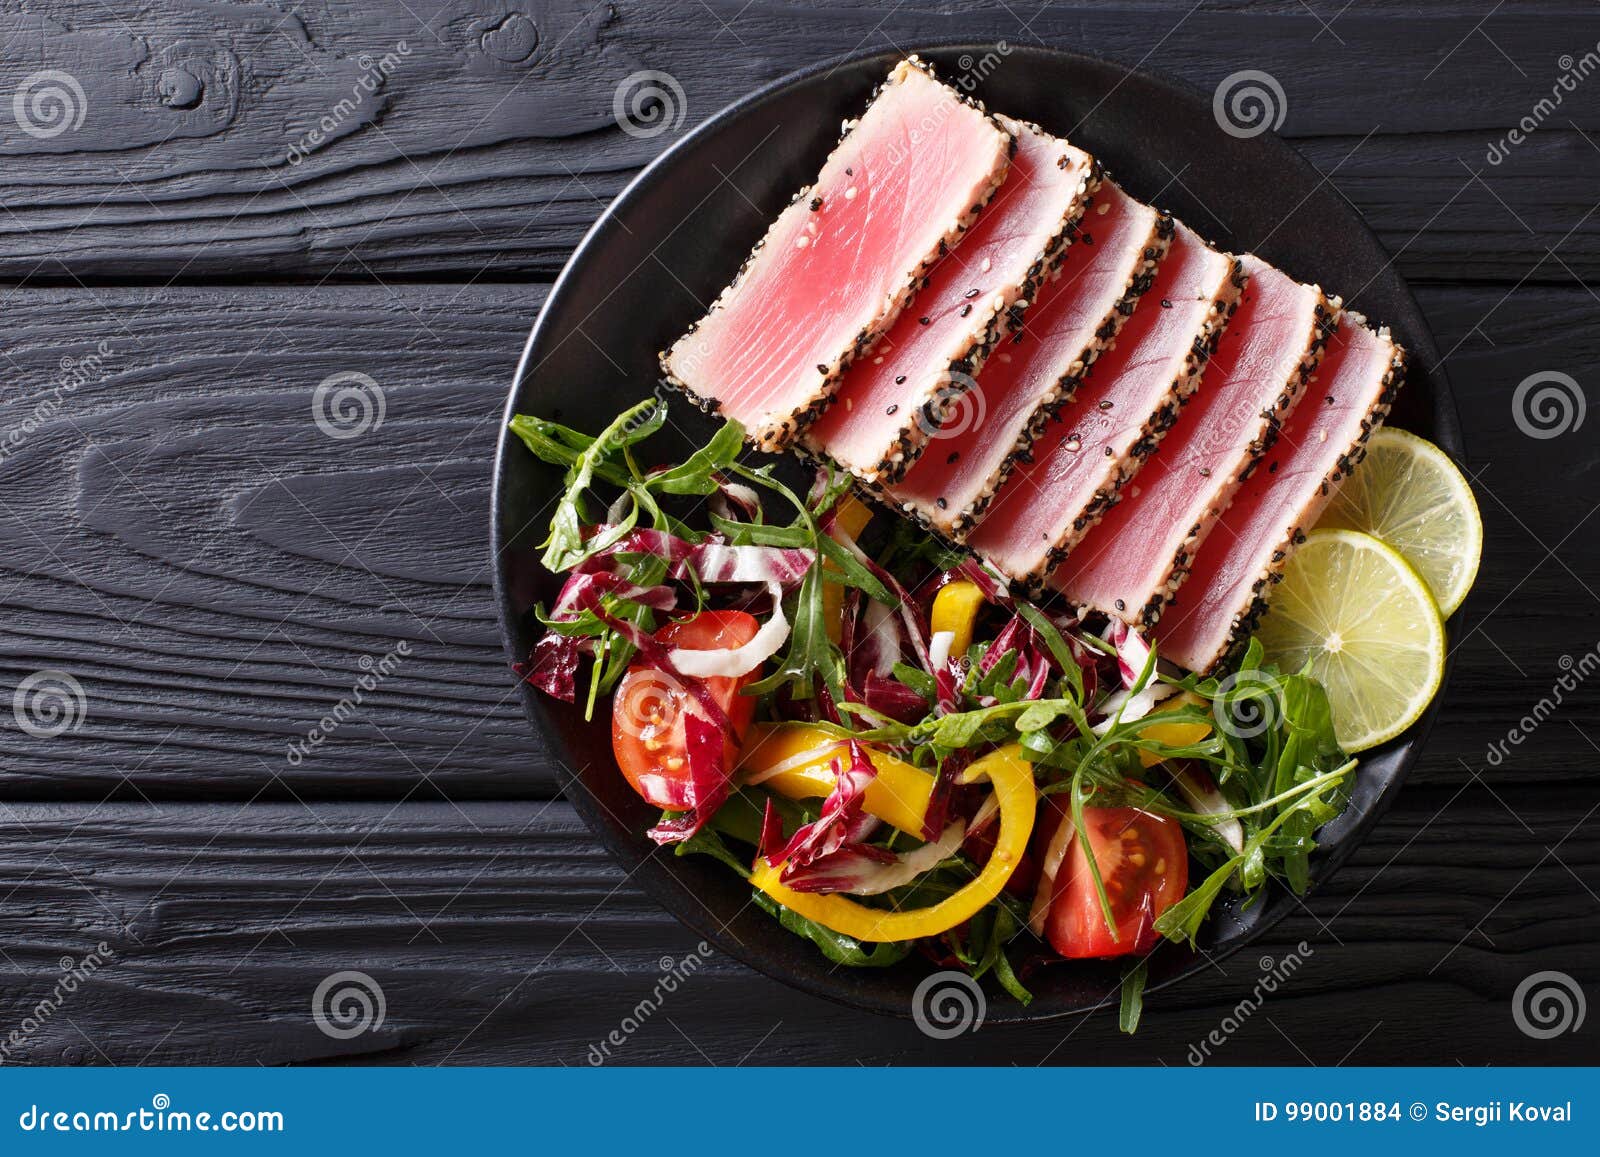 Zakończenie up rzadcy osmaleni Ahi tuńczyka plasterki z świeżego warzywa sal. Zakończenie up rzadcy osmaleni Ahi tuńczyka plasterki z świeżego warzywa sałatką na talerzu Odgórny widok od above horyzontalnego